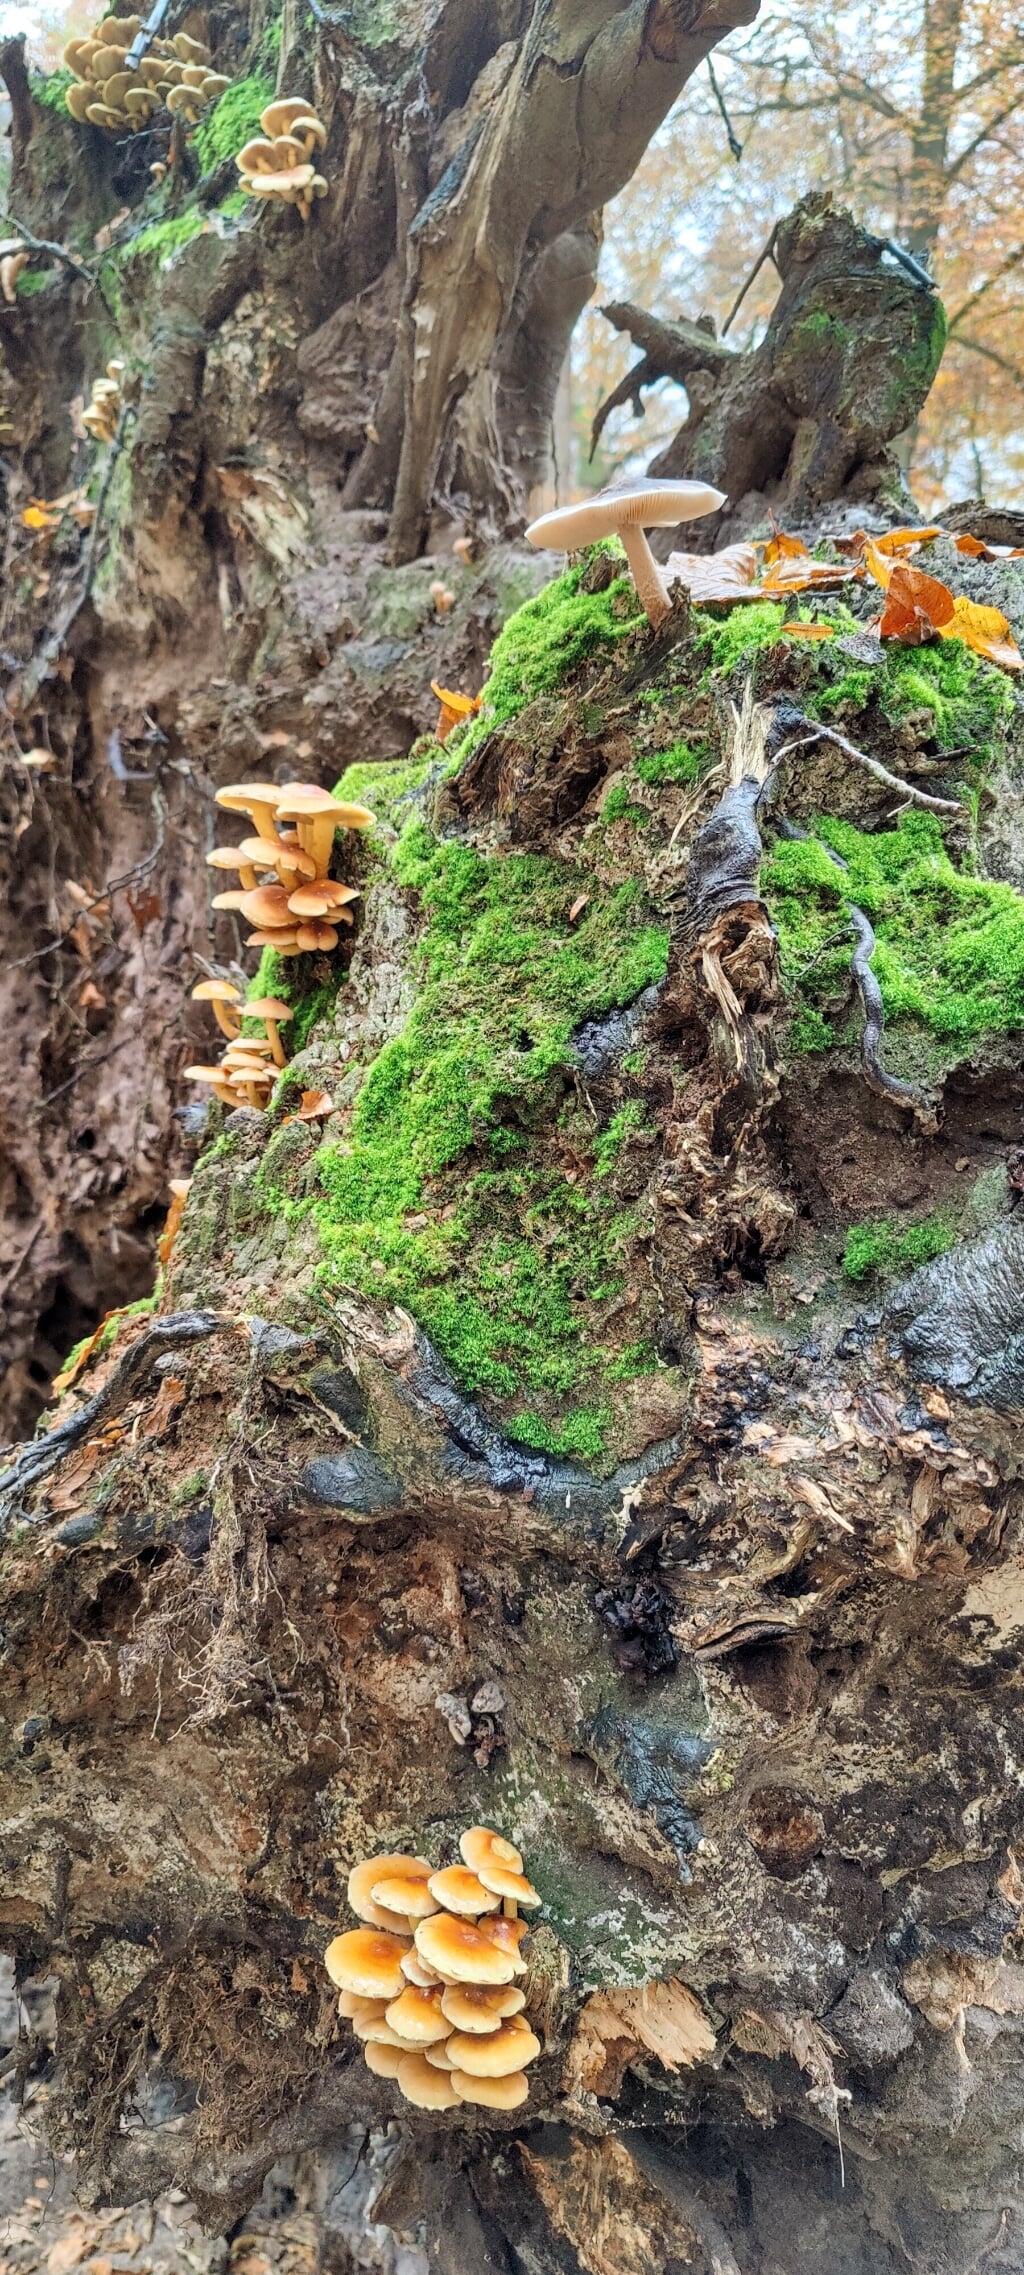 Rinkjan Postma uit Doetinchem: "Een prachtige miniatuurwereld op de stronk van een omgevallen boom. Je zou bijna weer in kabouters gaan geloven."